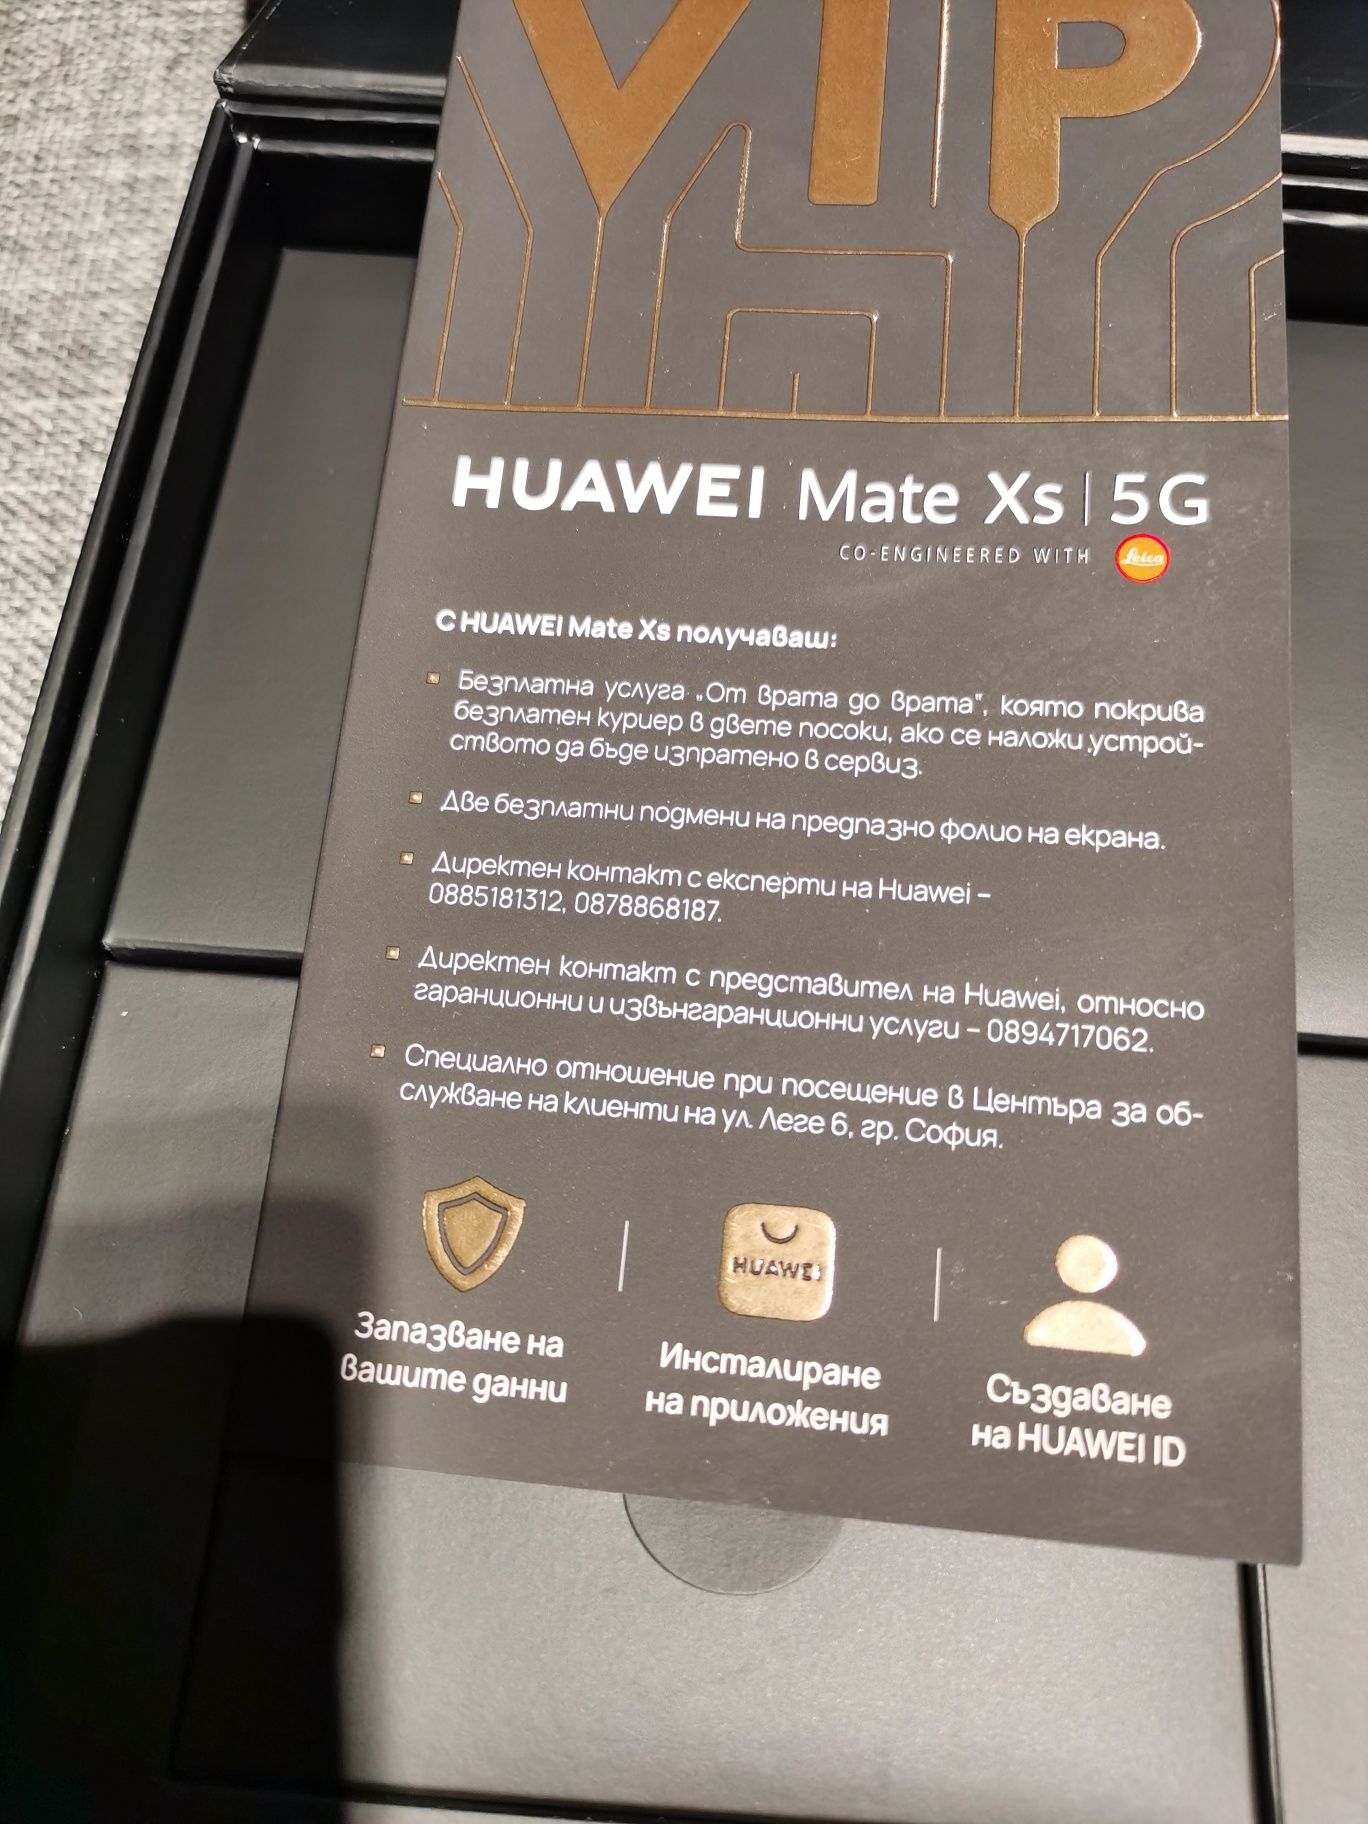 Huawei Mate XS 5G уникален апарат . Гаранция и застраховка.